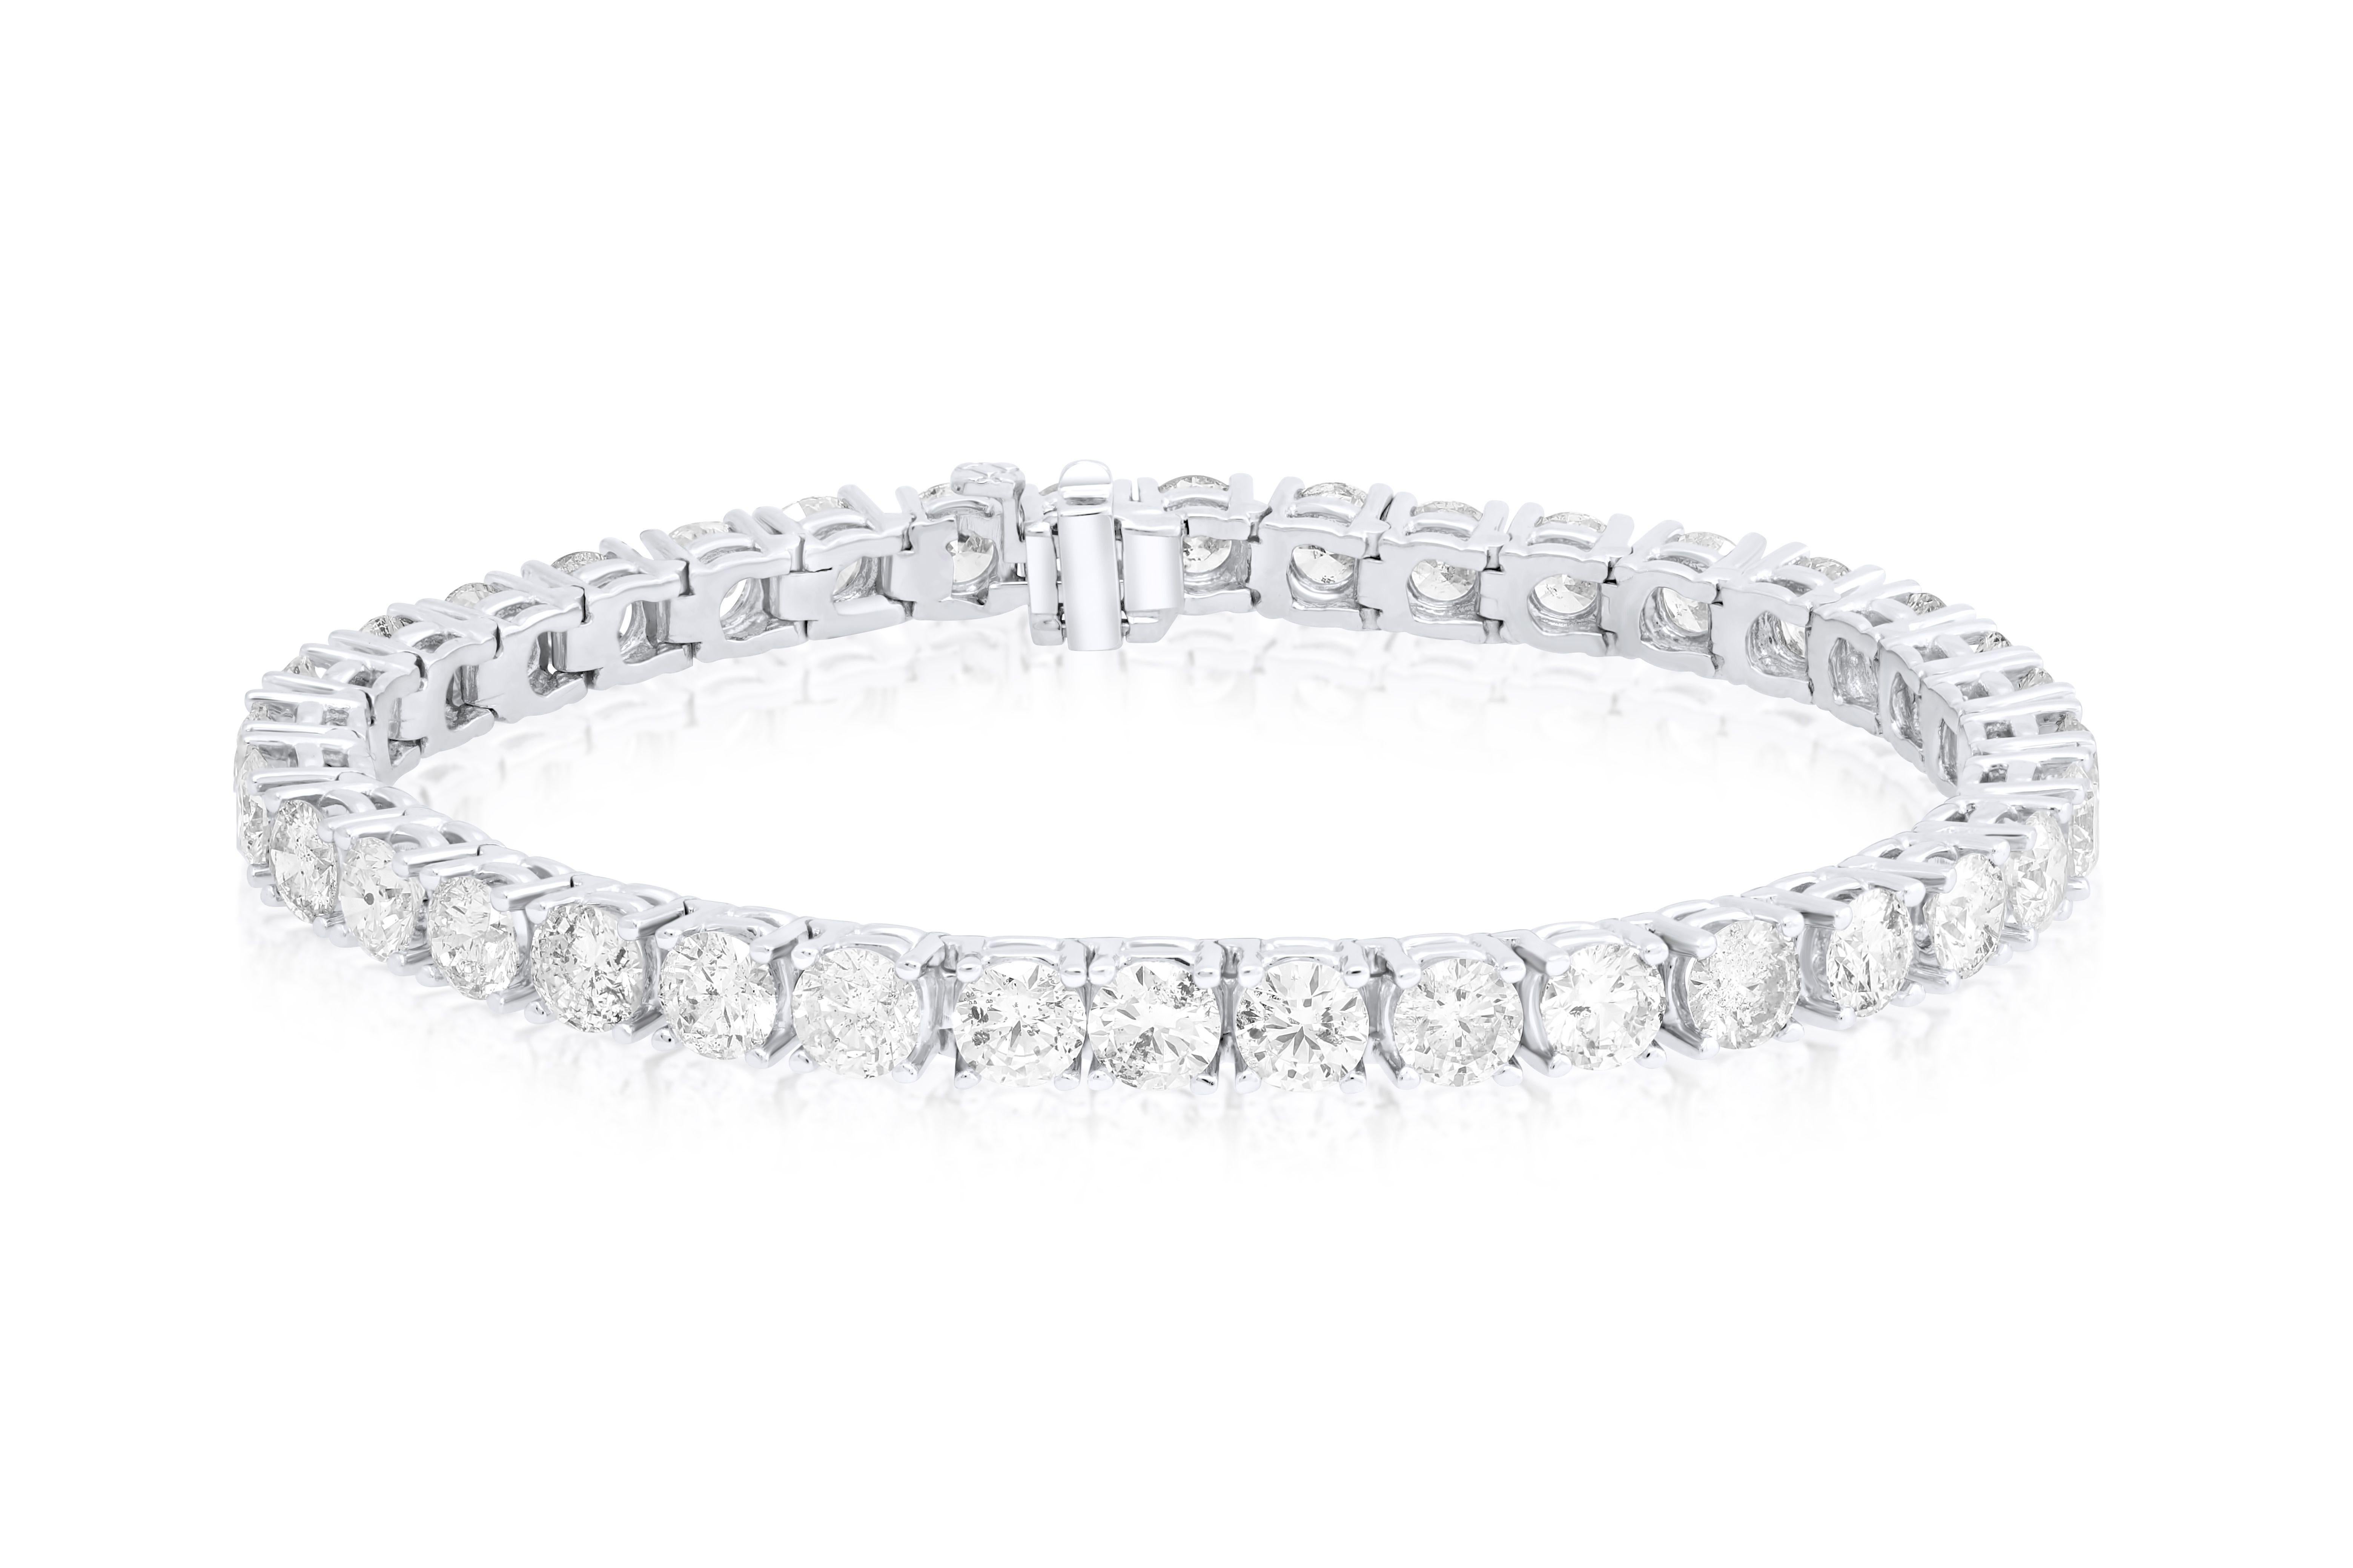 Bracelet tennis en or blanc 18 carats à 4 branches orné de 15.85 cts tw de diamants ronds (33 pierres) 
A&M est un fournisseur de premier plan de bijoux fins de qualité supérieure depuis plus de 35 ans.
Diana M-One est un magasin unique pour tous